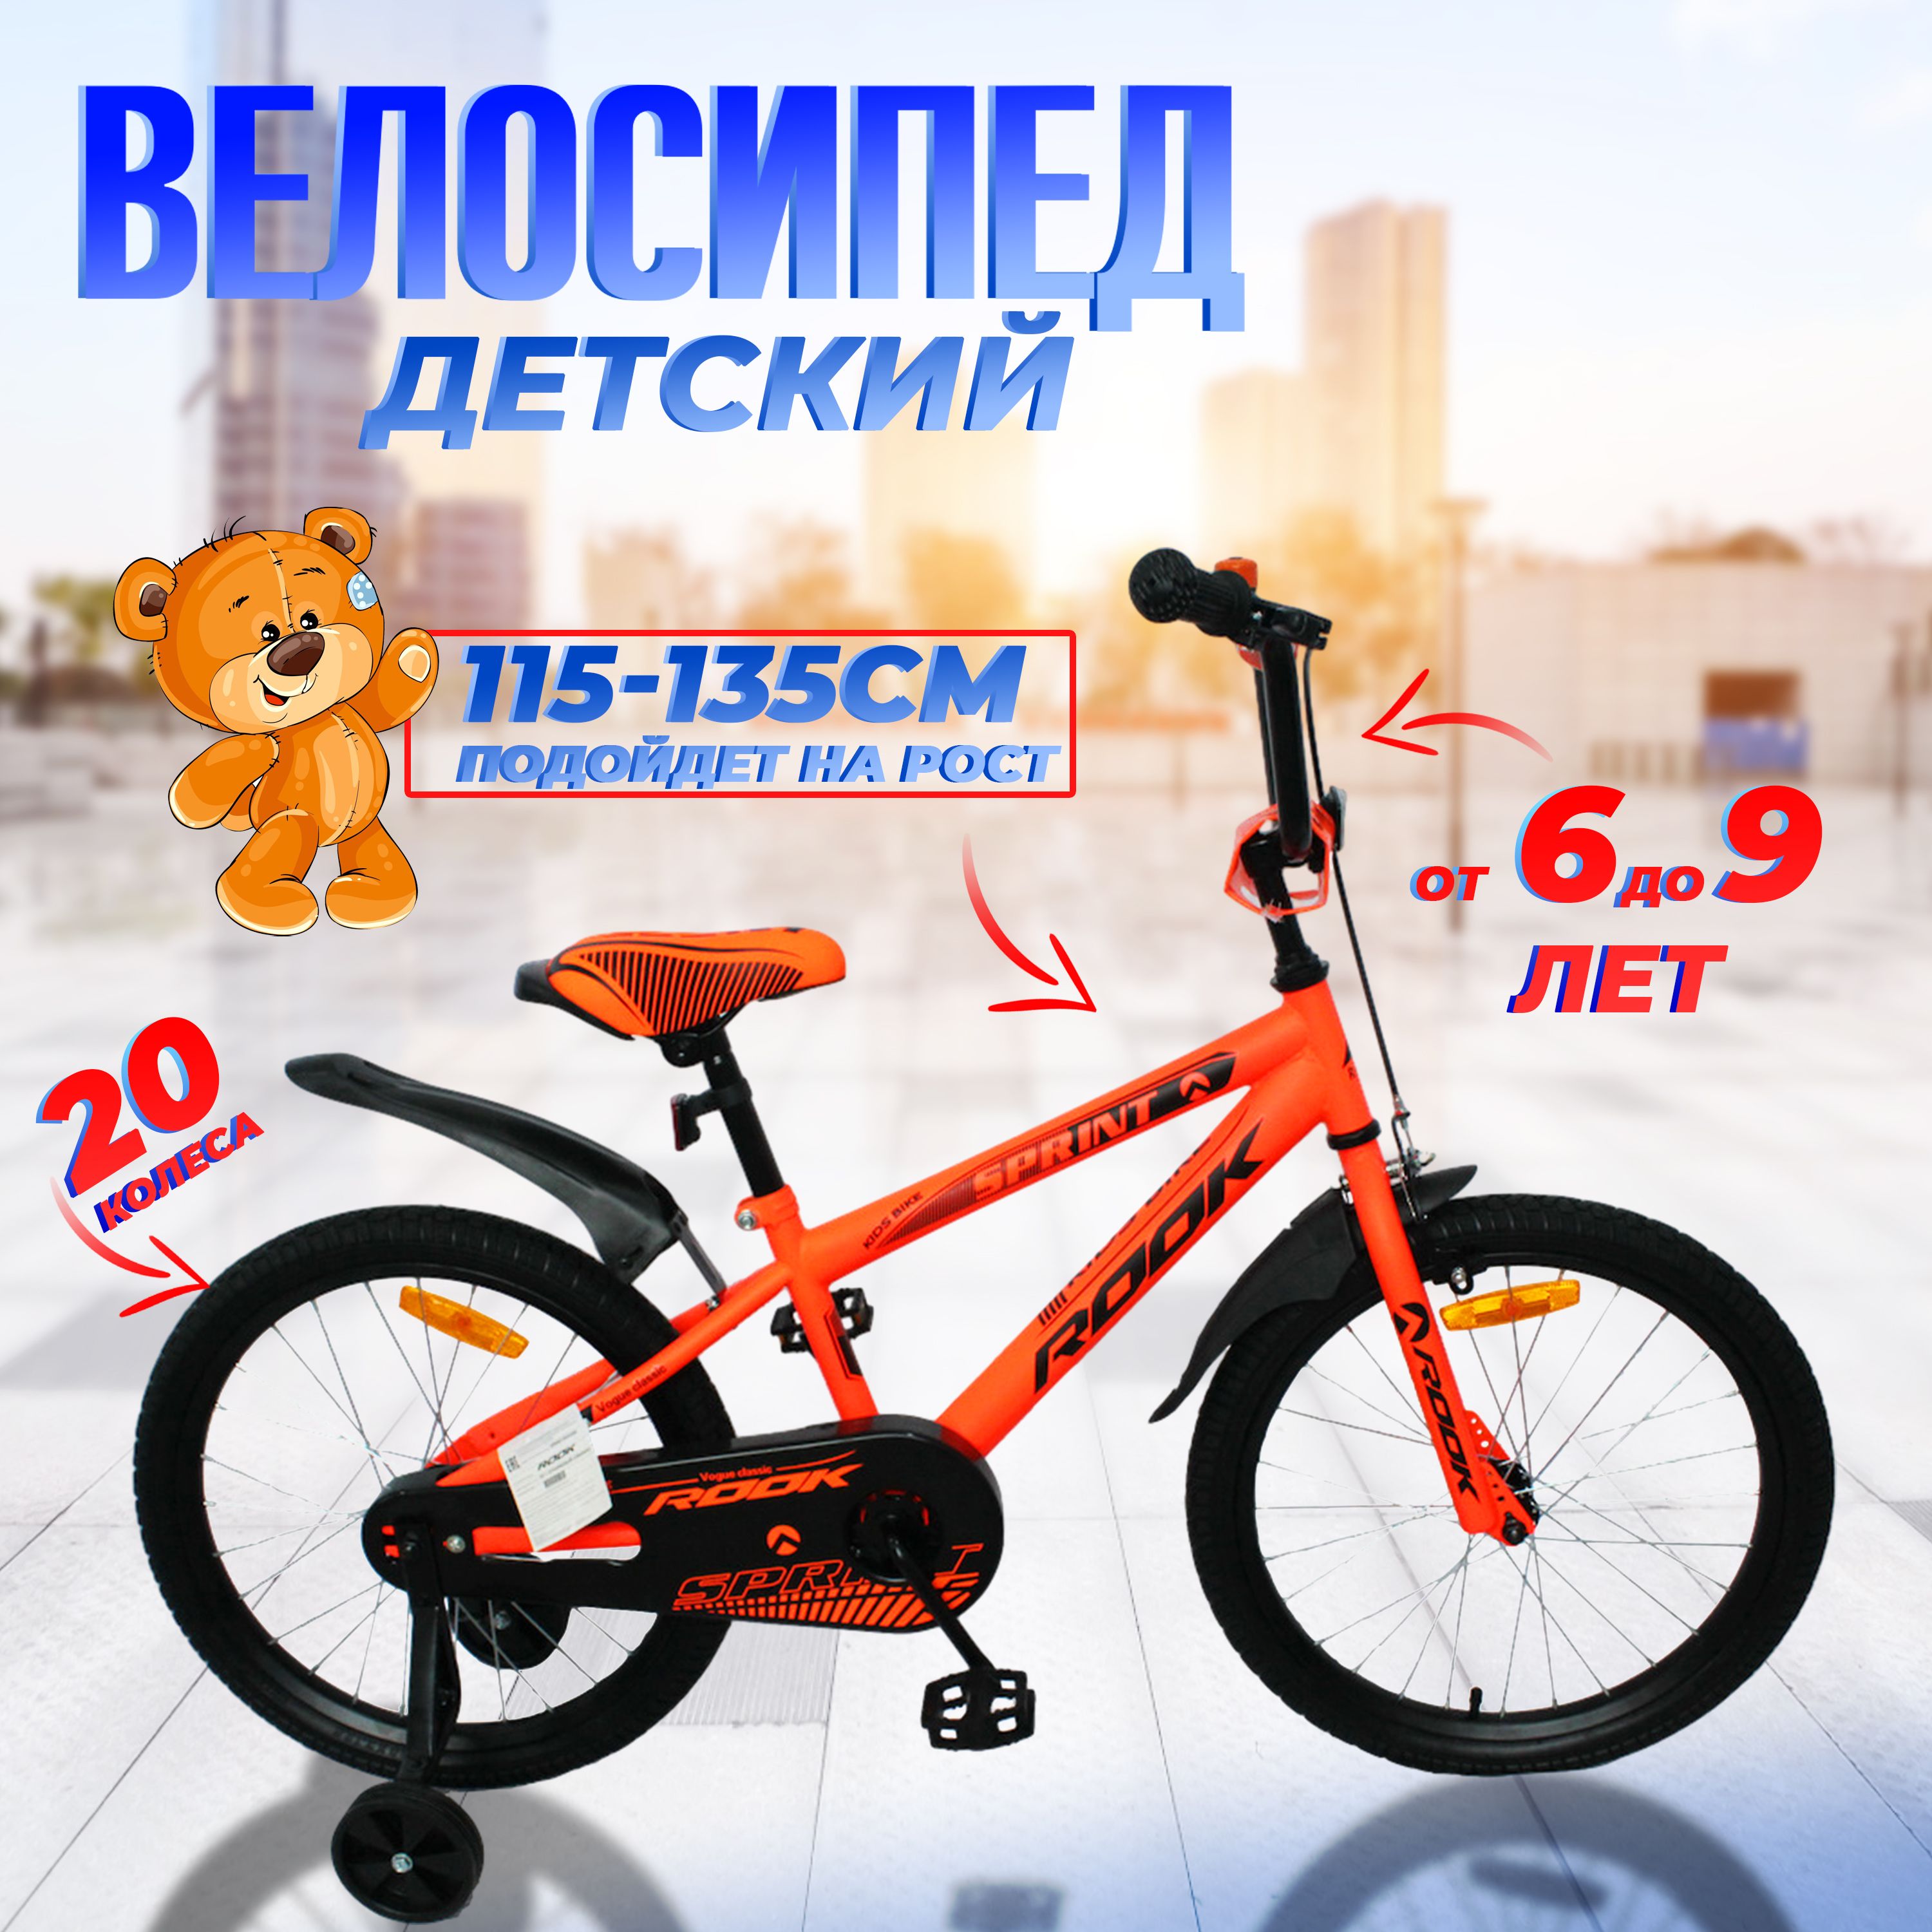 Велосипеддвухколесныйдетский20"дюймовRookSprint,рост115-135см,оранжевый.От6до8лет/длямальчика/длядевочки